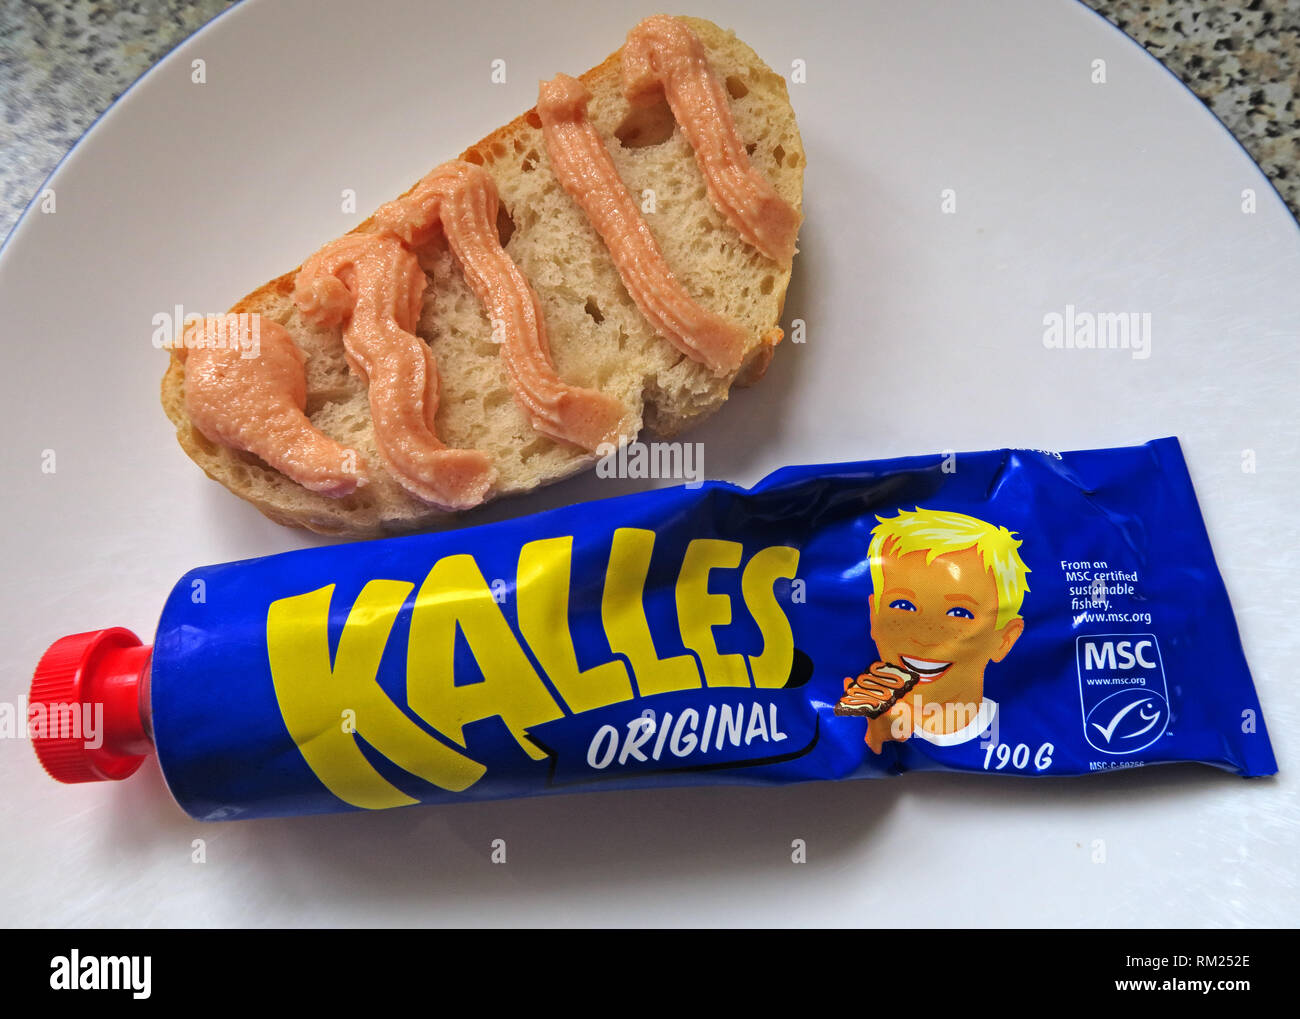 Un tube bleu de Kalles original, la morue (Gadus morhua) oeufs, sucre, huile de canola et d'épices, giclé sur du pain frais, le suédois IKEA FOOD Banque D'Images